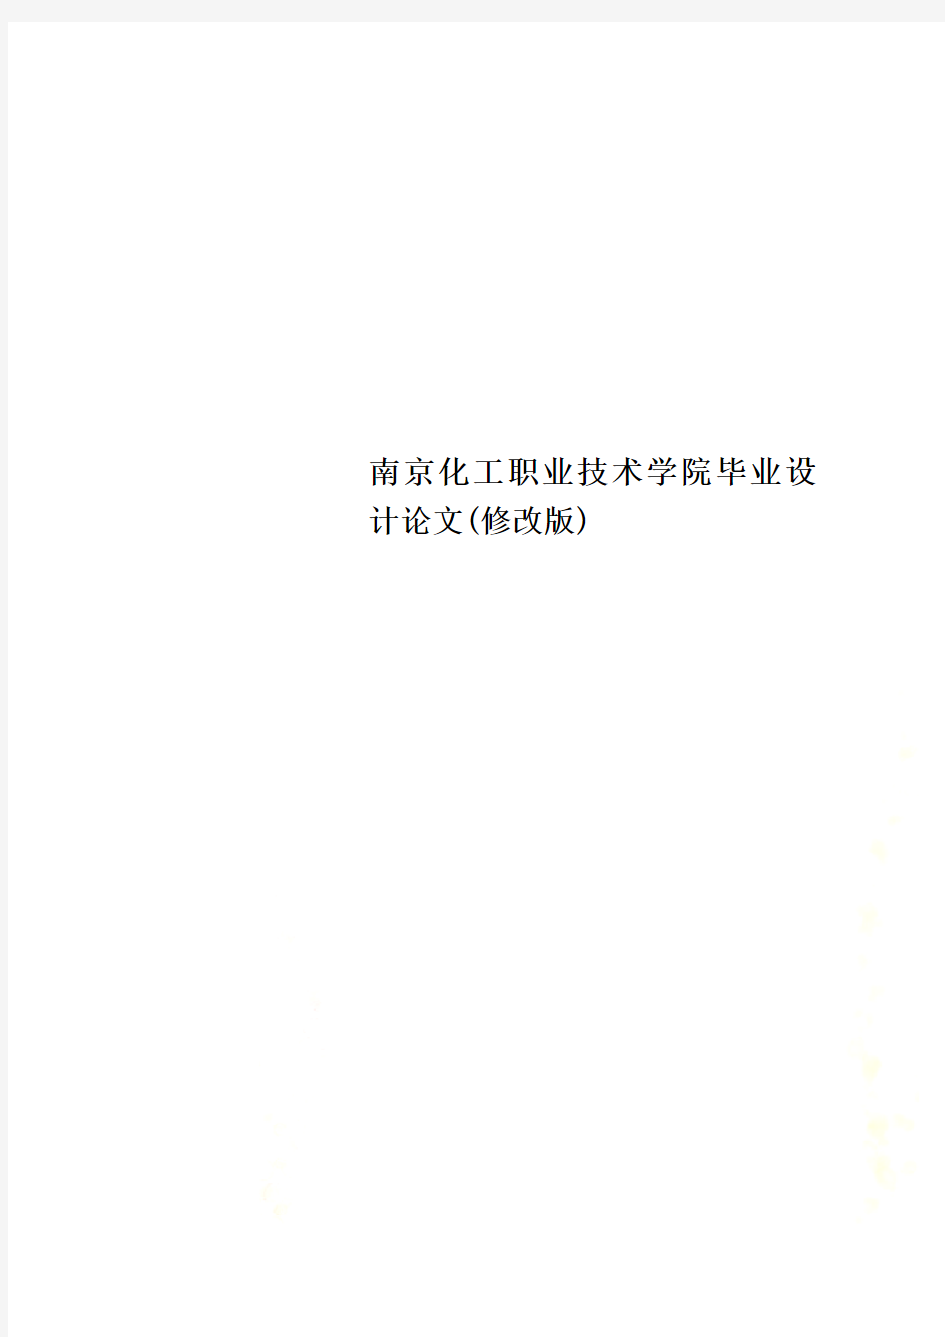 南京化工职业技术学院毕业设计论文(修改版)